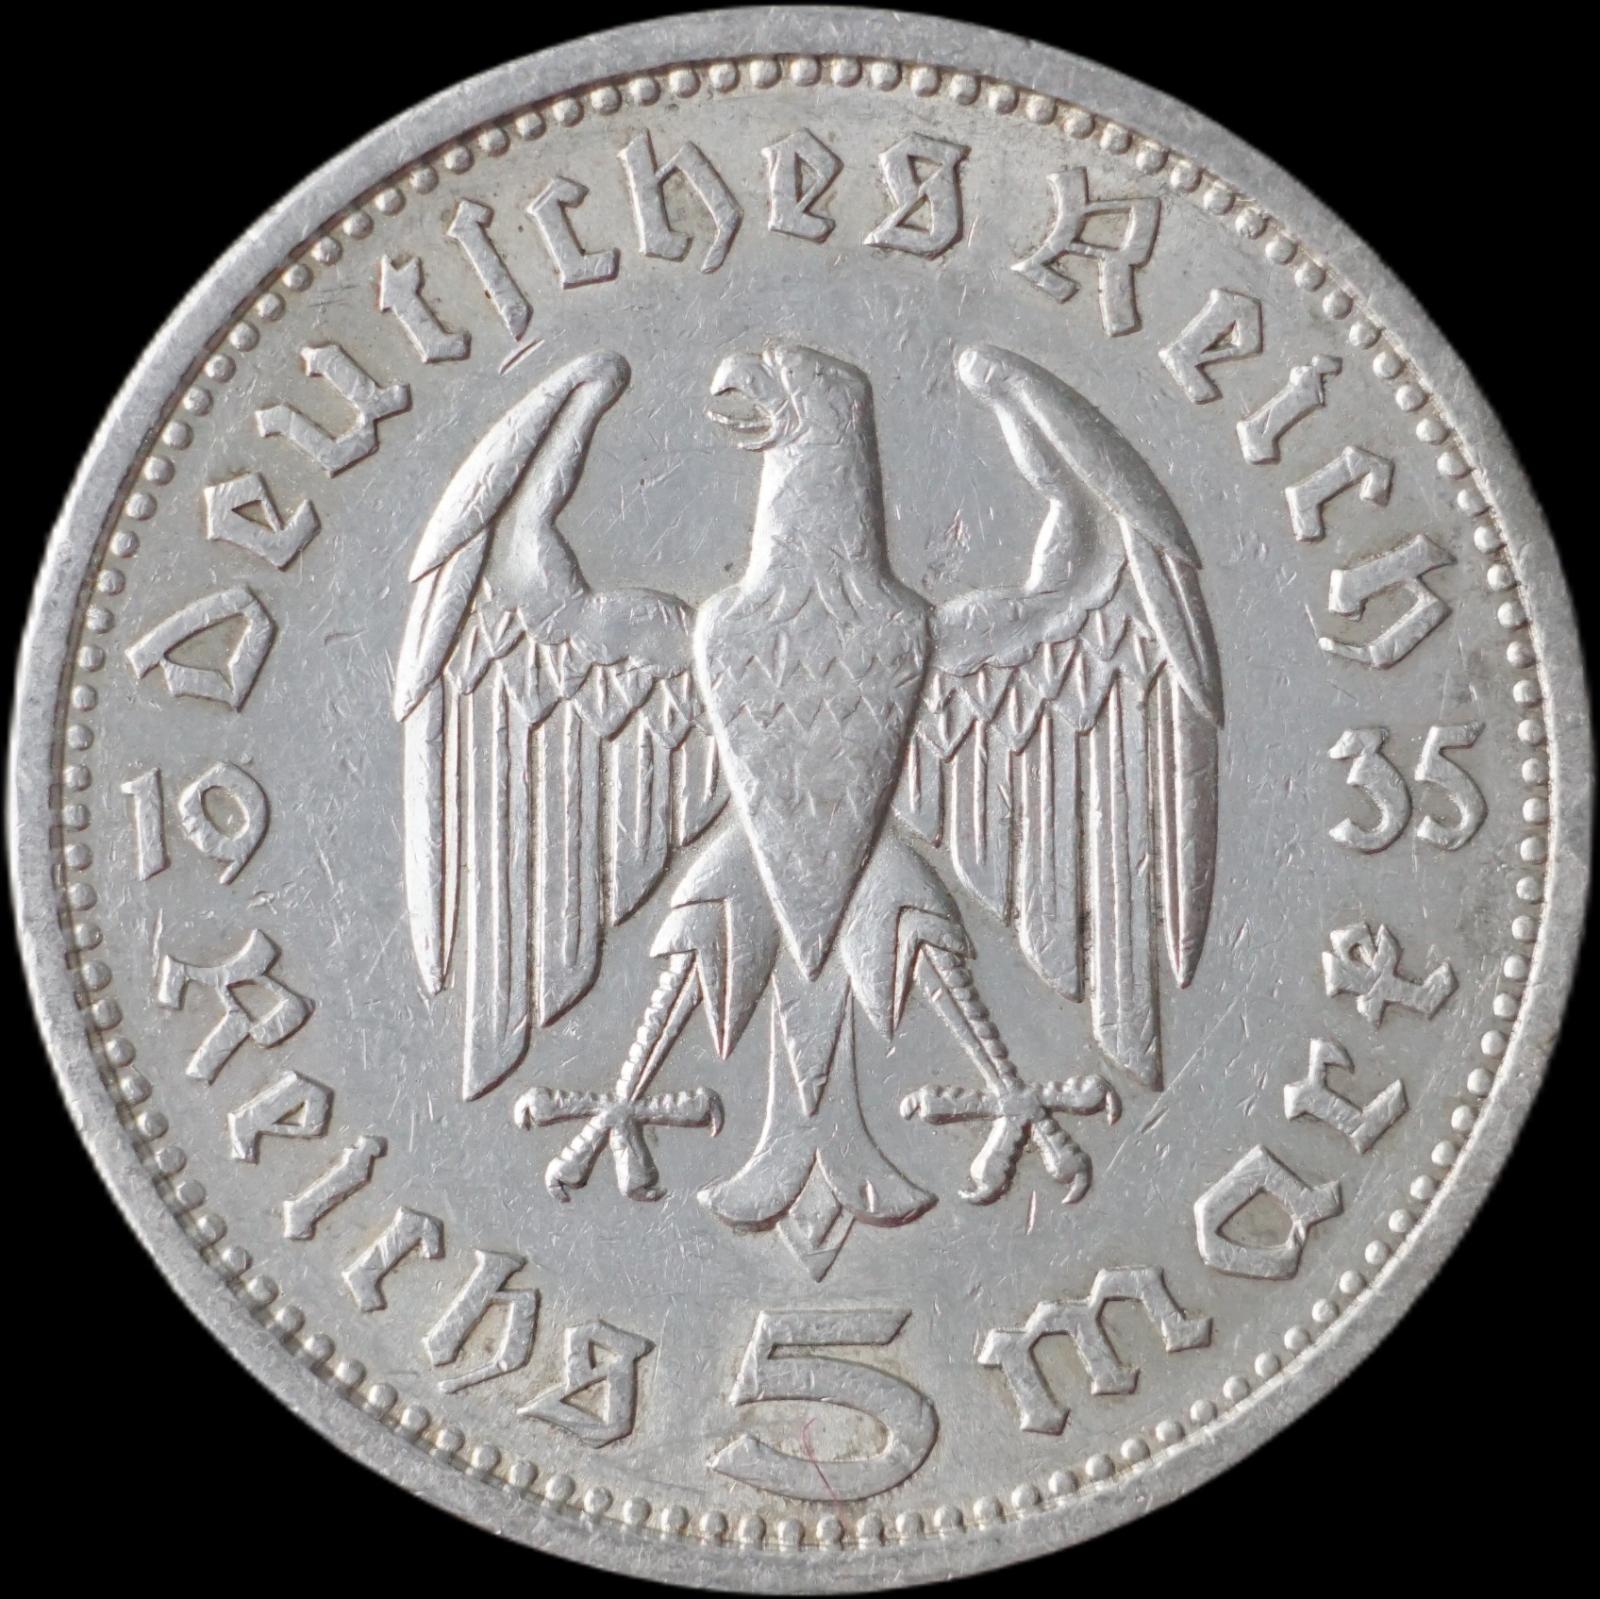 Nemecko - 5 Marka 1935 A Hindenburg - strieborná minca - Numizmatika